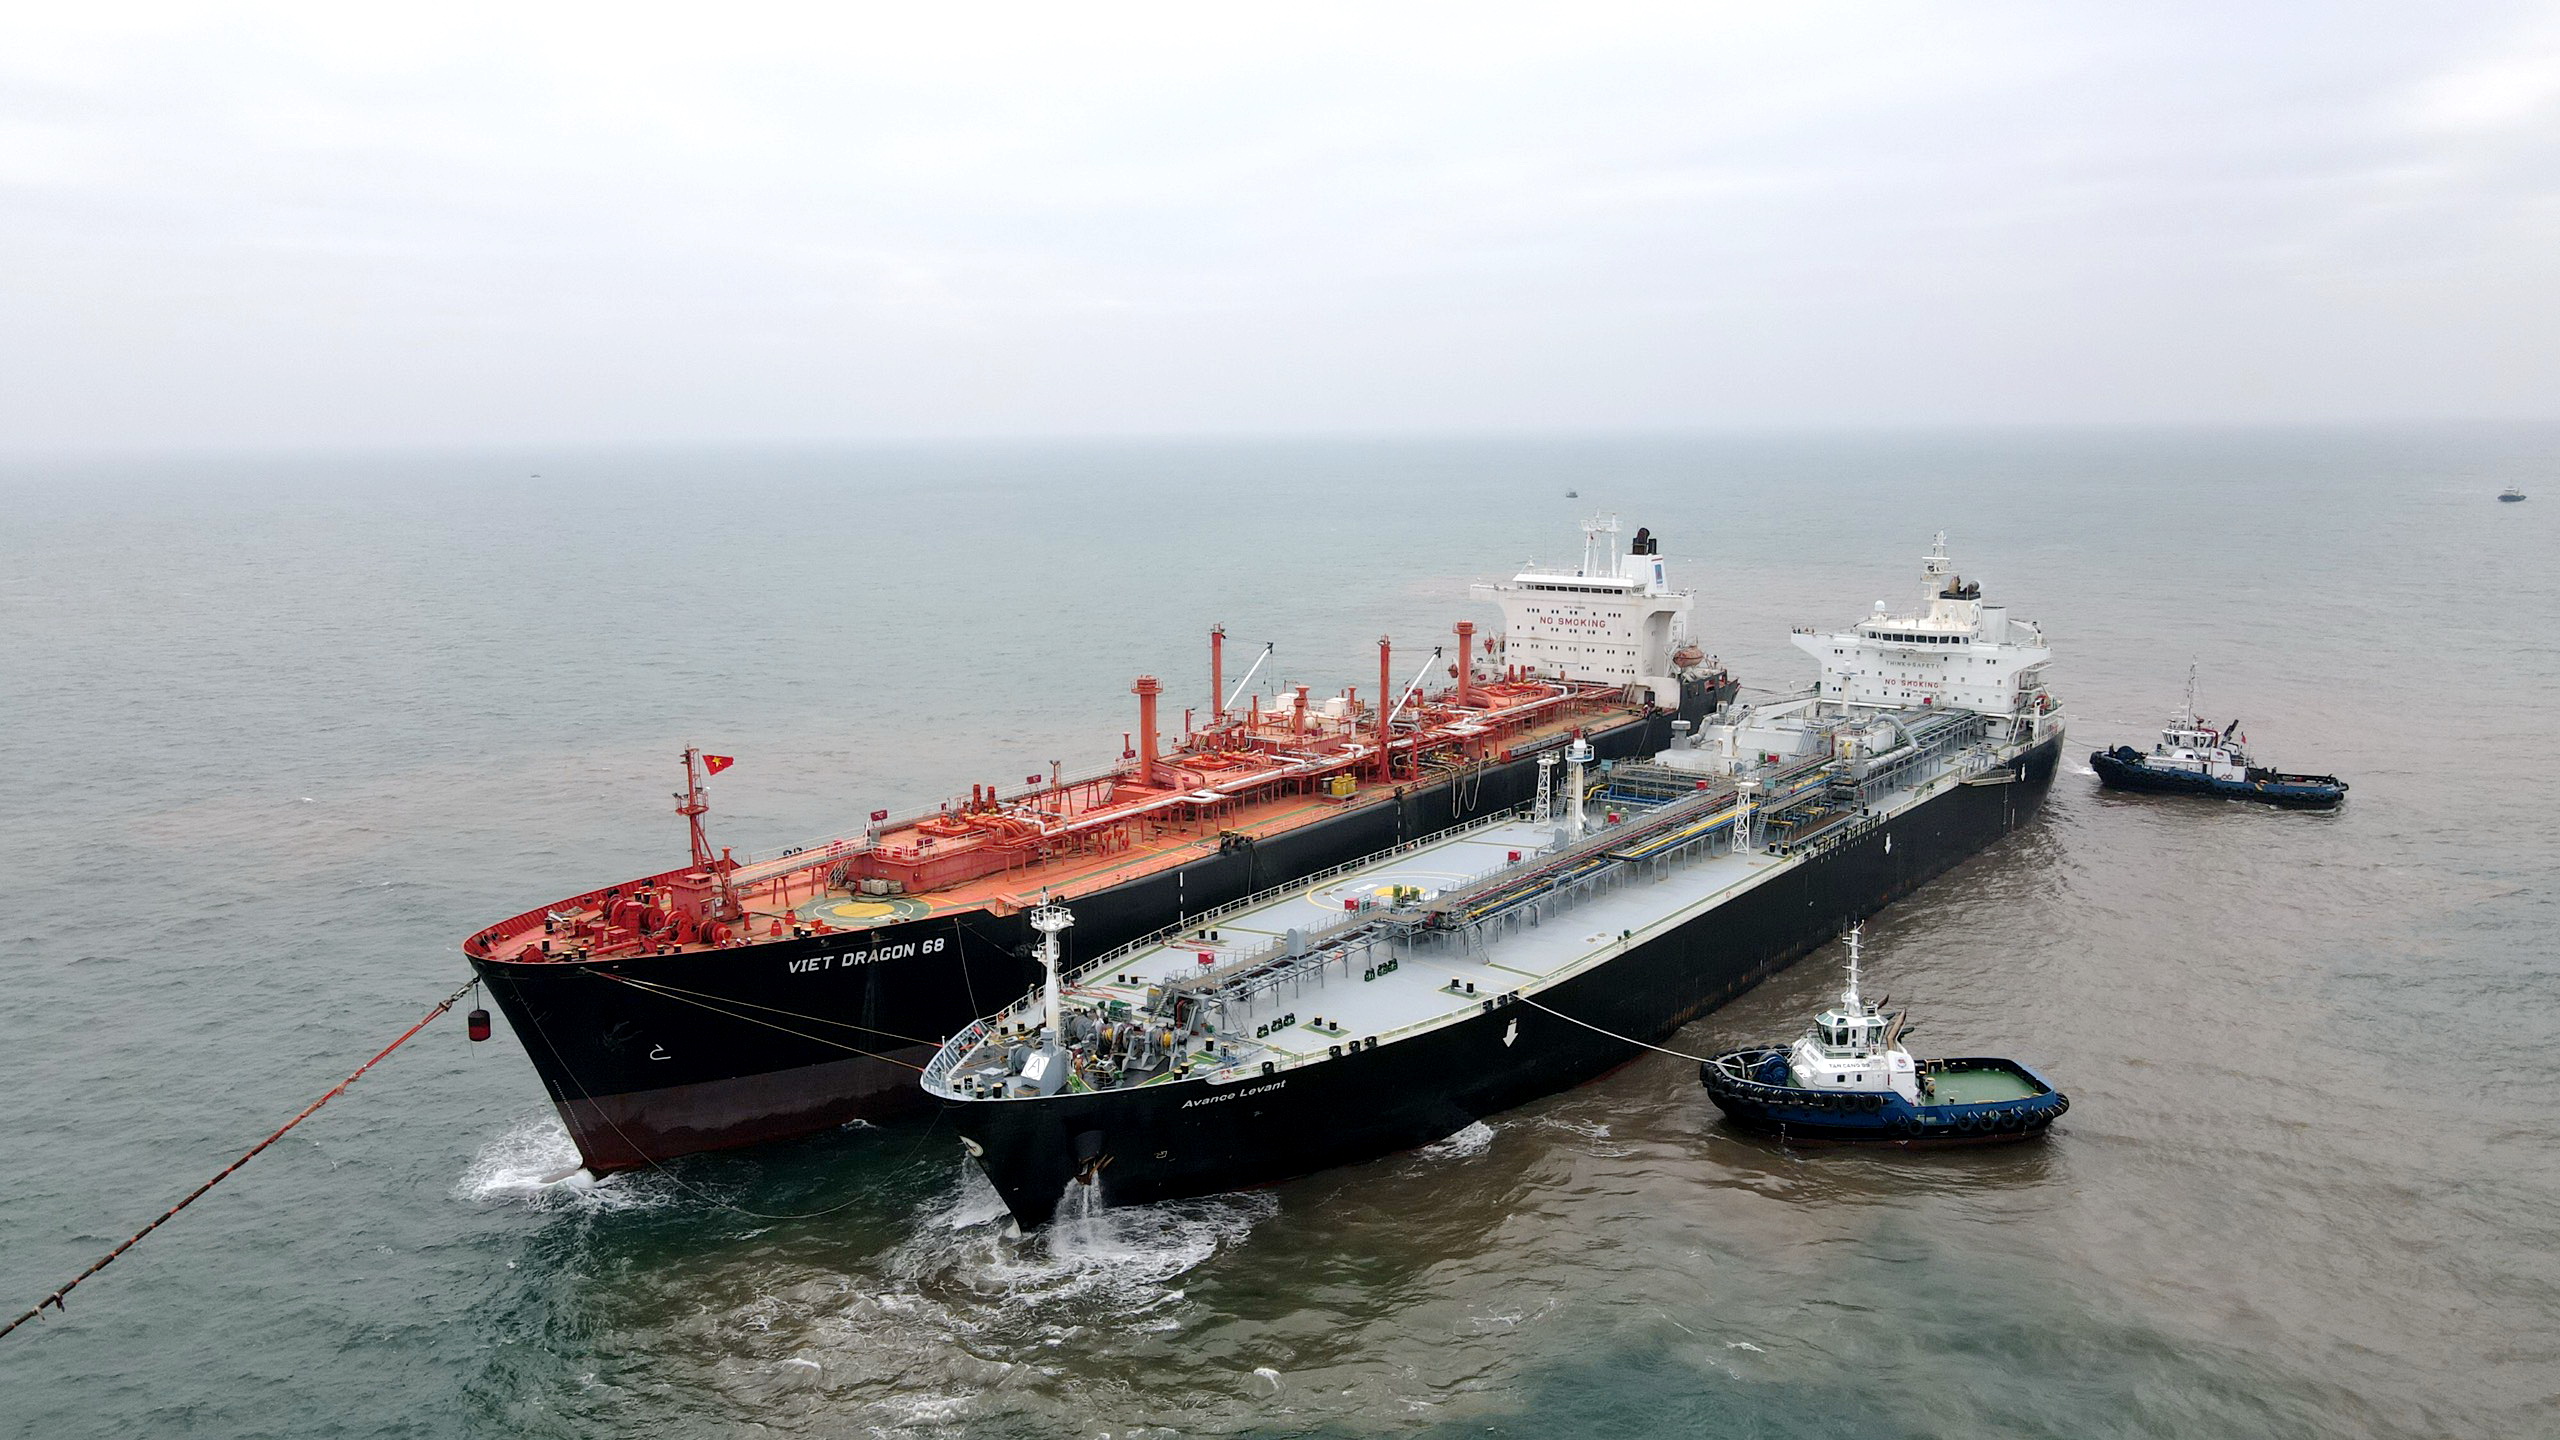 Tàu Avance Levant cập vào tàu kho Nổi Việt Dragon 68 do PVGAS Trading để chuyển tải LPG vào đầu năm 2023